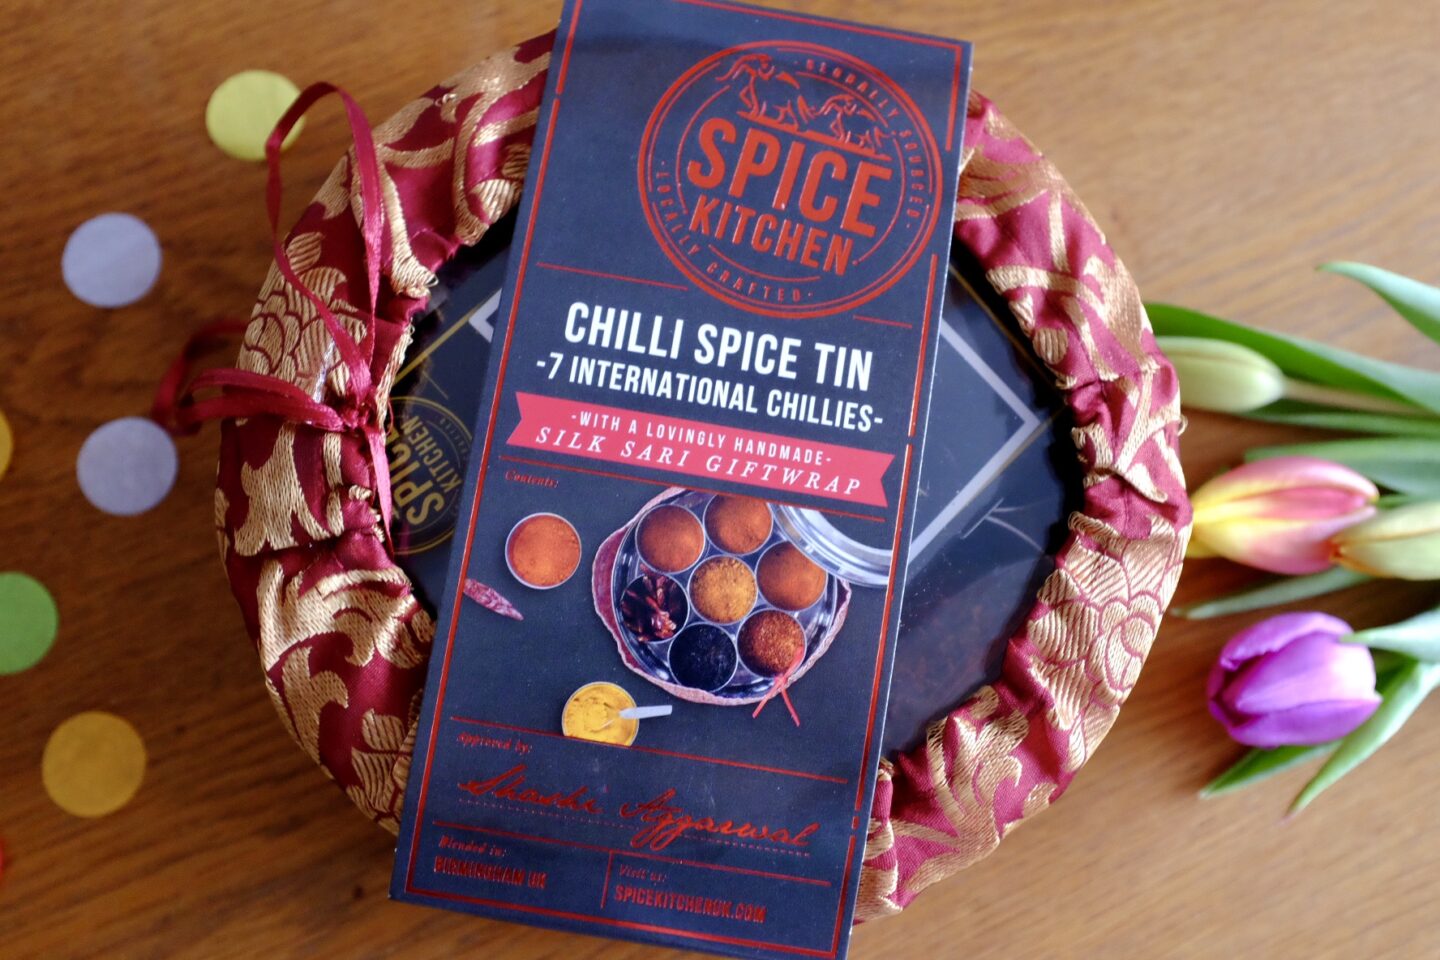 spice kitchen chilli tin